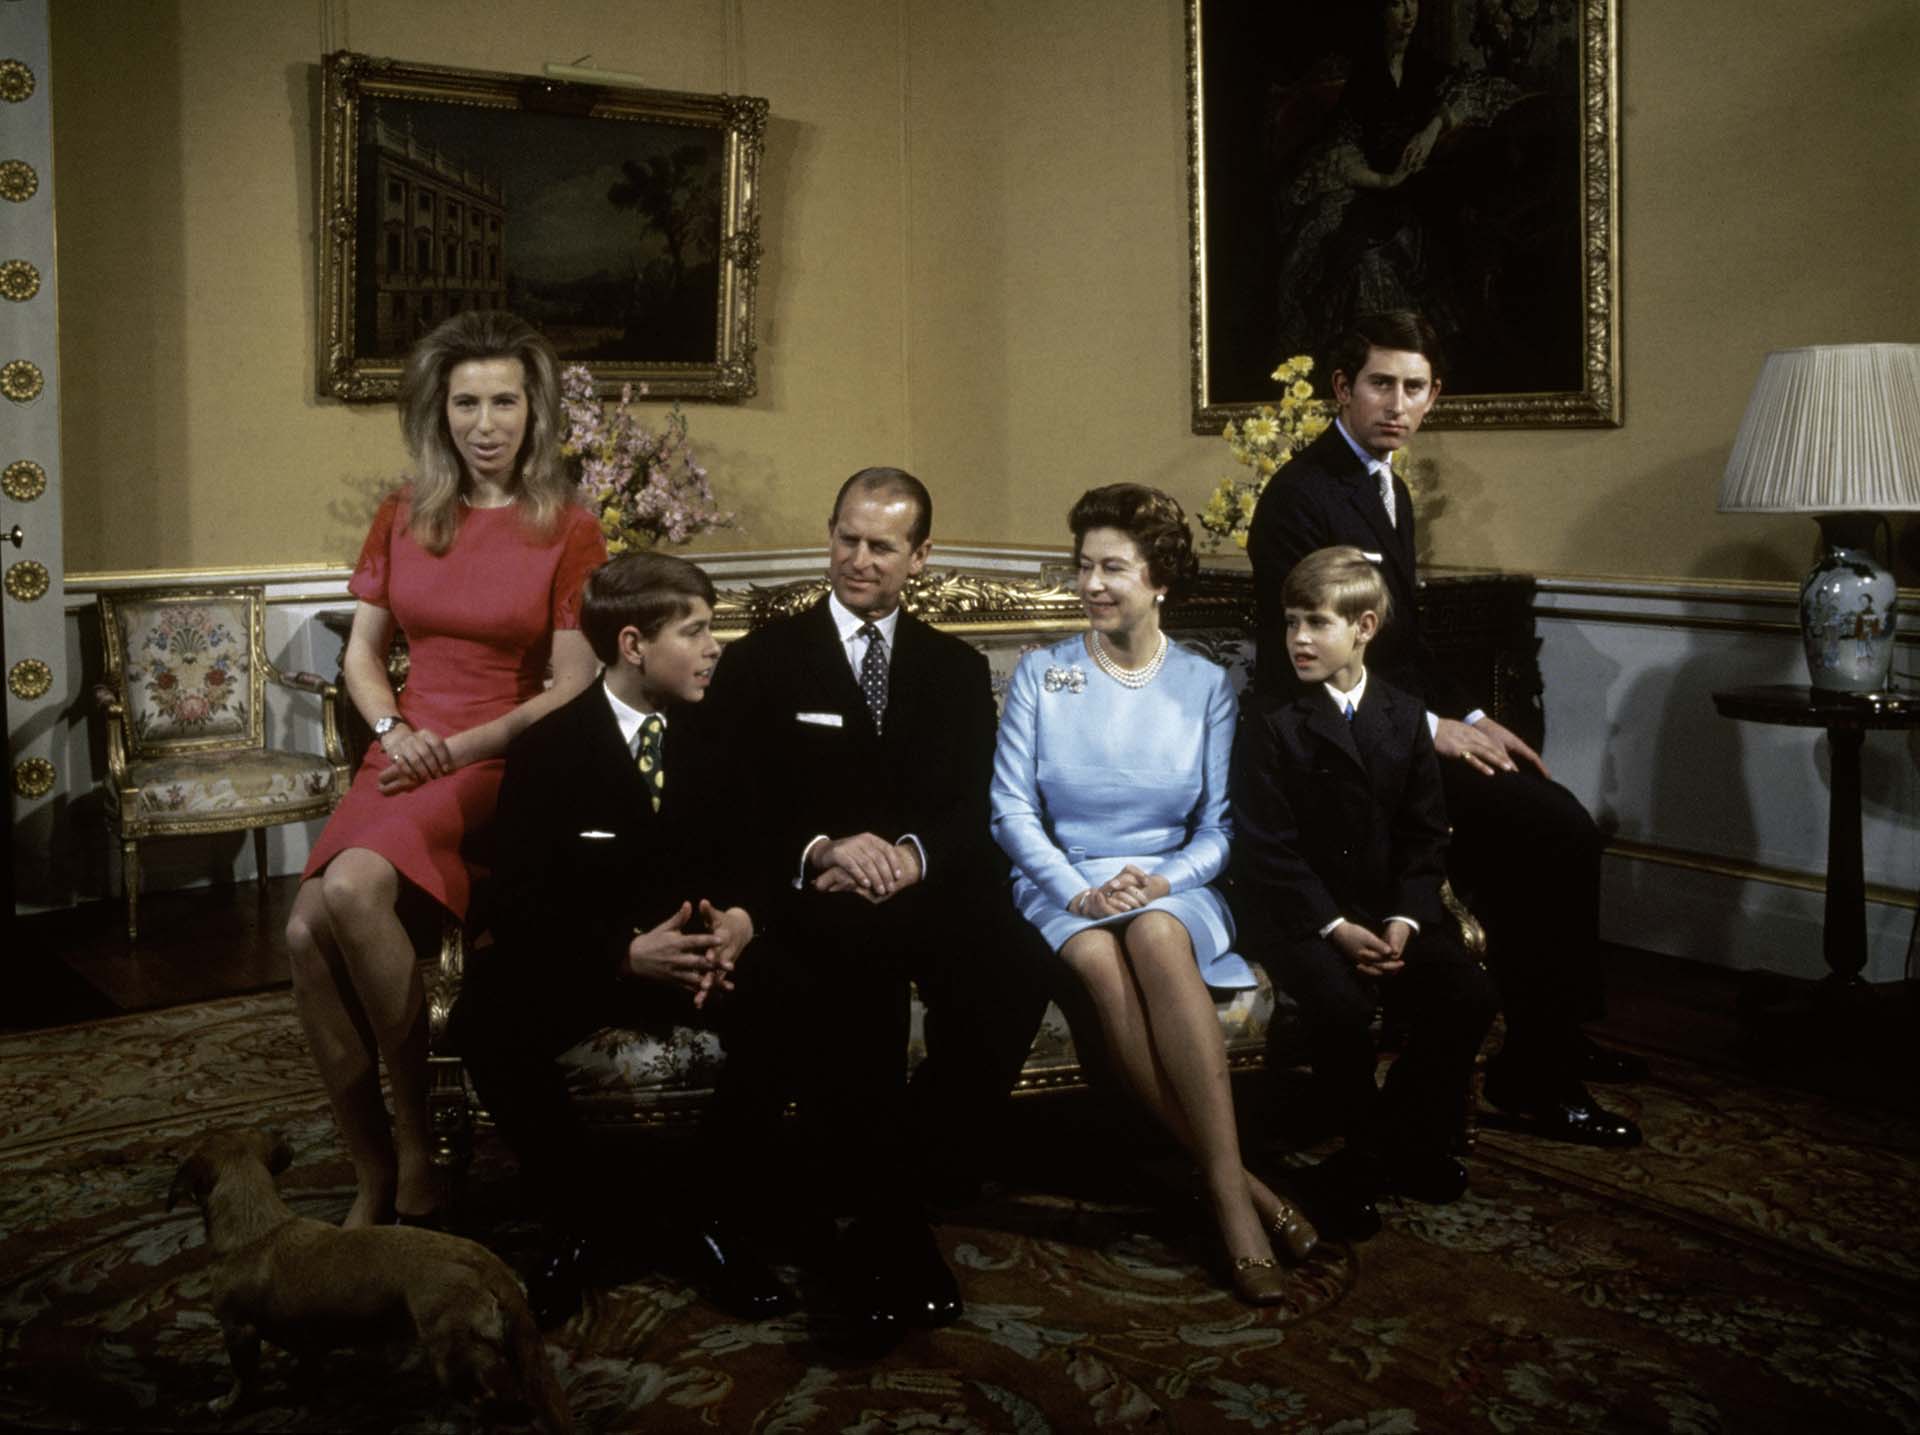 La familia real en el Palacio de Buckingham, en1972. De izquierda a derecha: la princesa Ana, el príncipe Andrés, el príncipe Felipe, la reina Isabel, el príncipe Eduardo y el príncipe Carlos (Fox Photos/Hulton Archive/Getty Images) 
